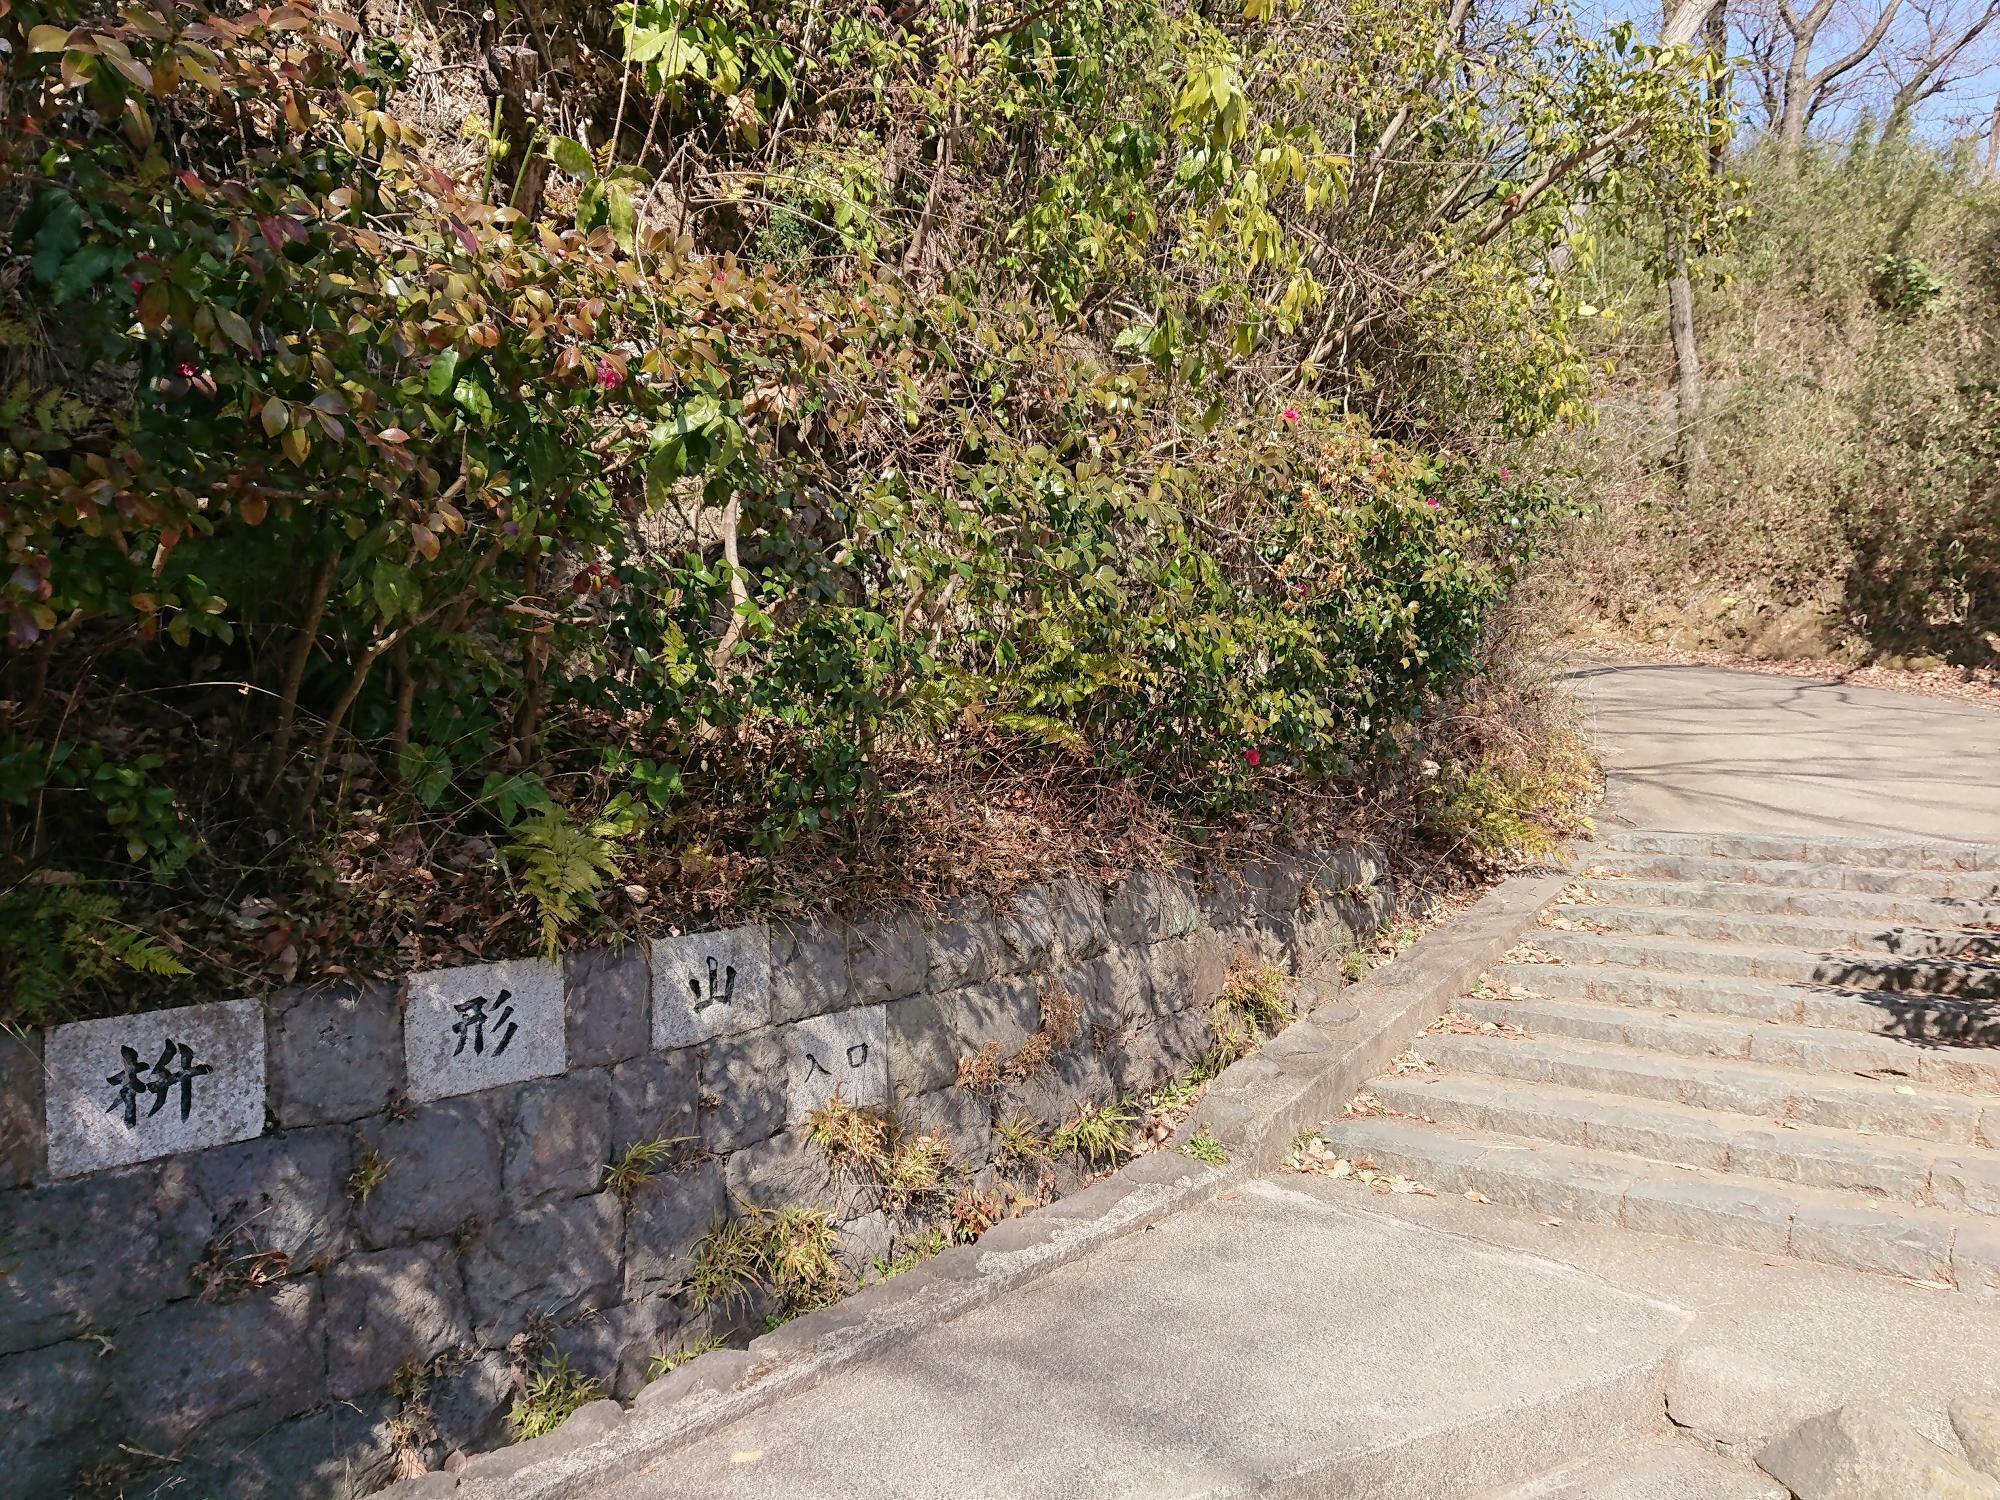 「枡形山入口」の文字が目印